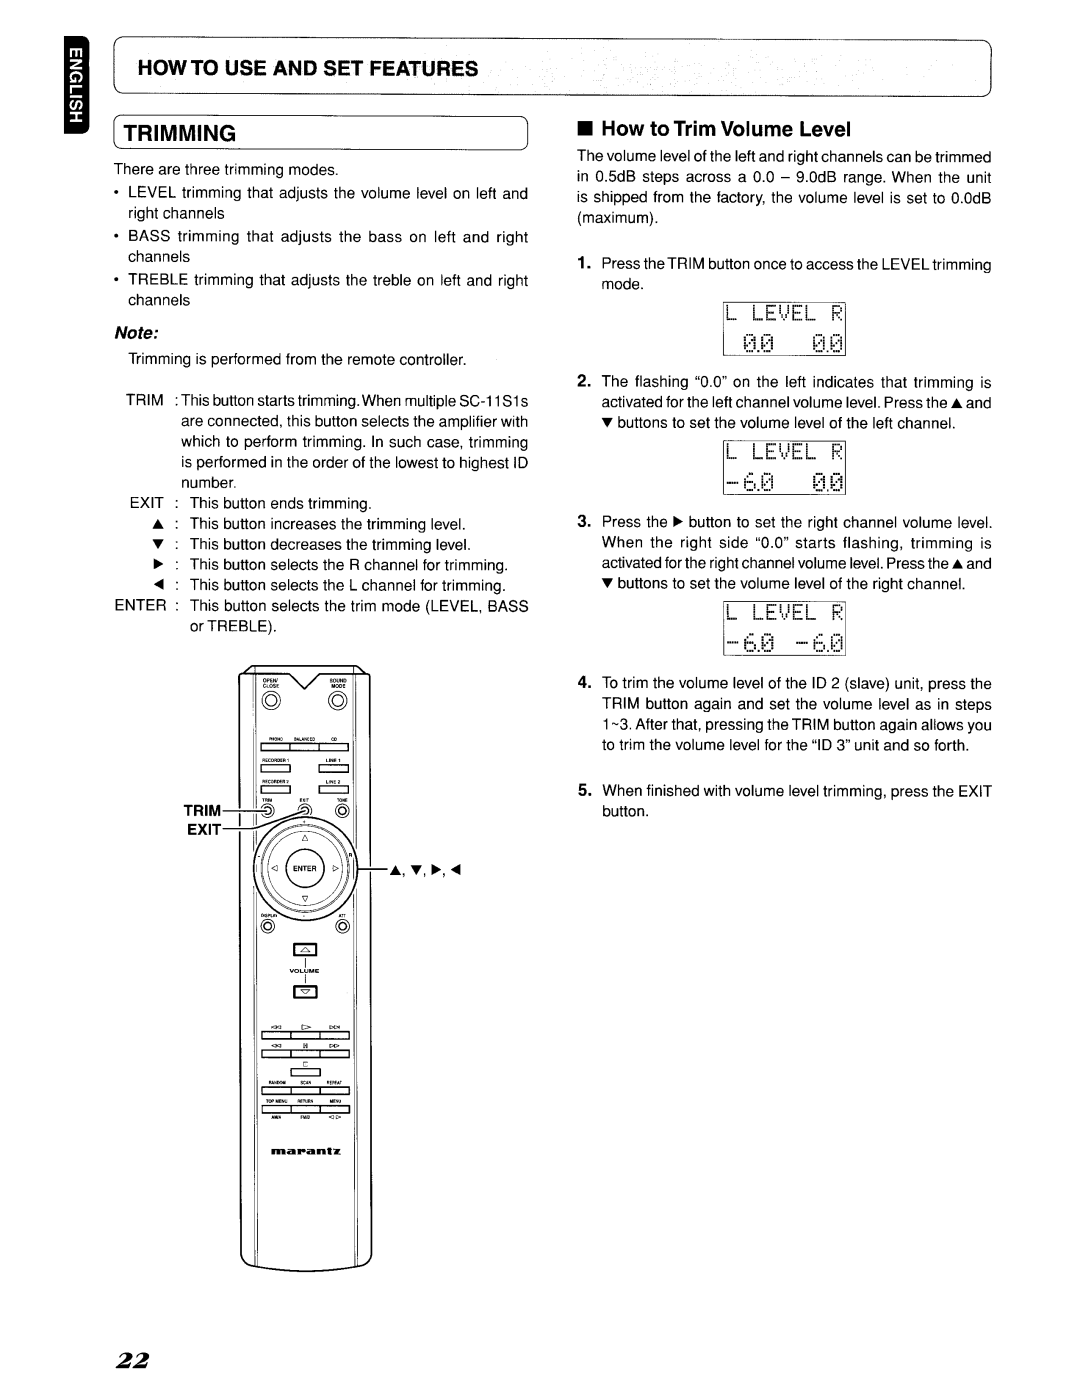 Marantz 642SC11S1, SC-11S1 manual 621, Iitrimming, How to Trim Volume Level, L LEi,EL F, L Le!,El F 